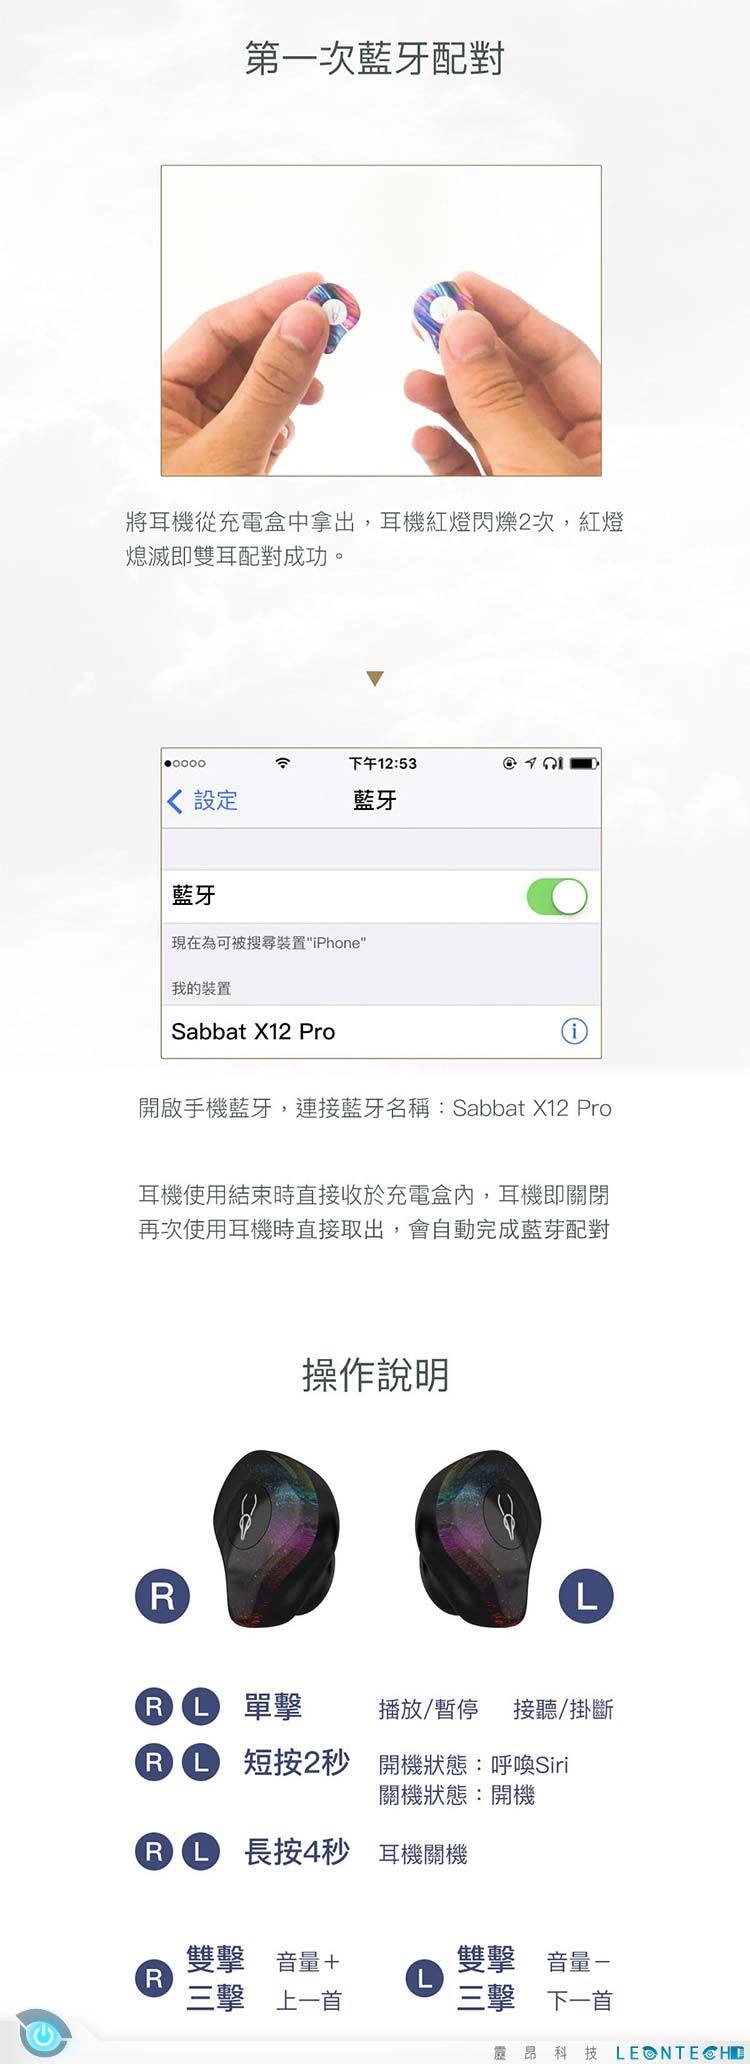 魔宴 X12pro 真無線藍芽耳機 5.0藍牙技術 日本Hi-Res認證 Hi-Fi震撼音質 支援Siri 安卓語音助手功能